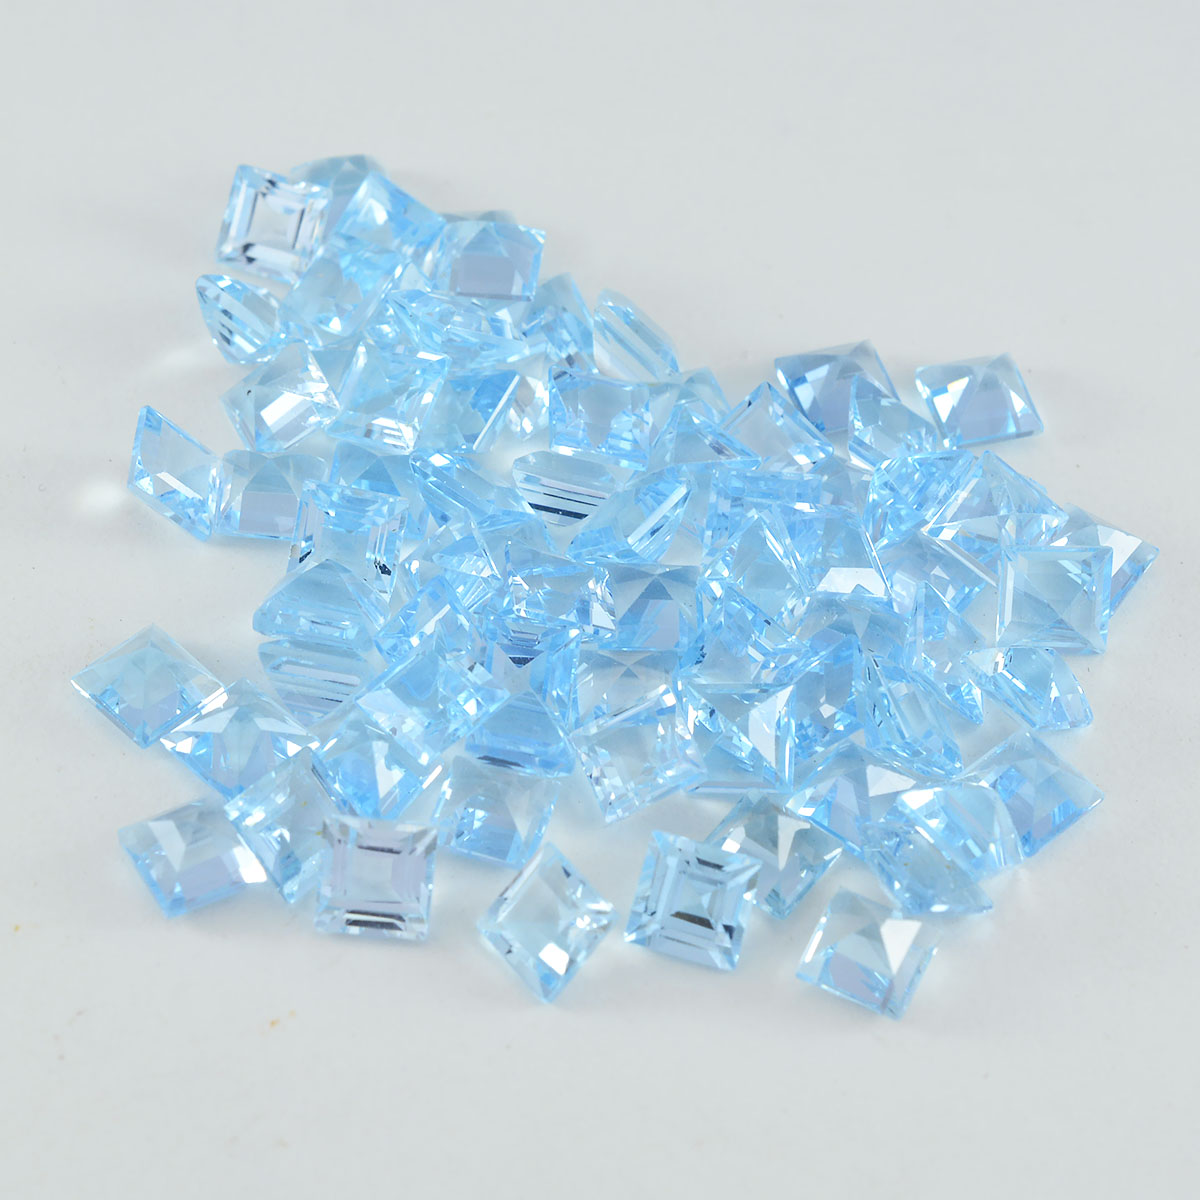 Riyogems 1 pièce de topaze bleue naturelle à facettes 5x5mm de forme carrée, pierres précieuses de bonne qualité